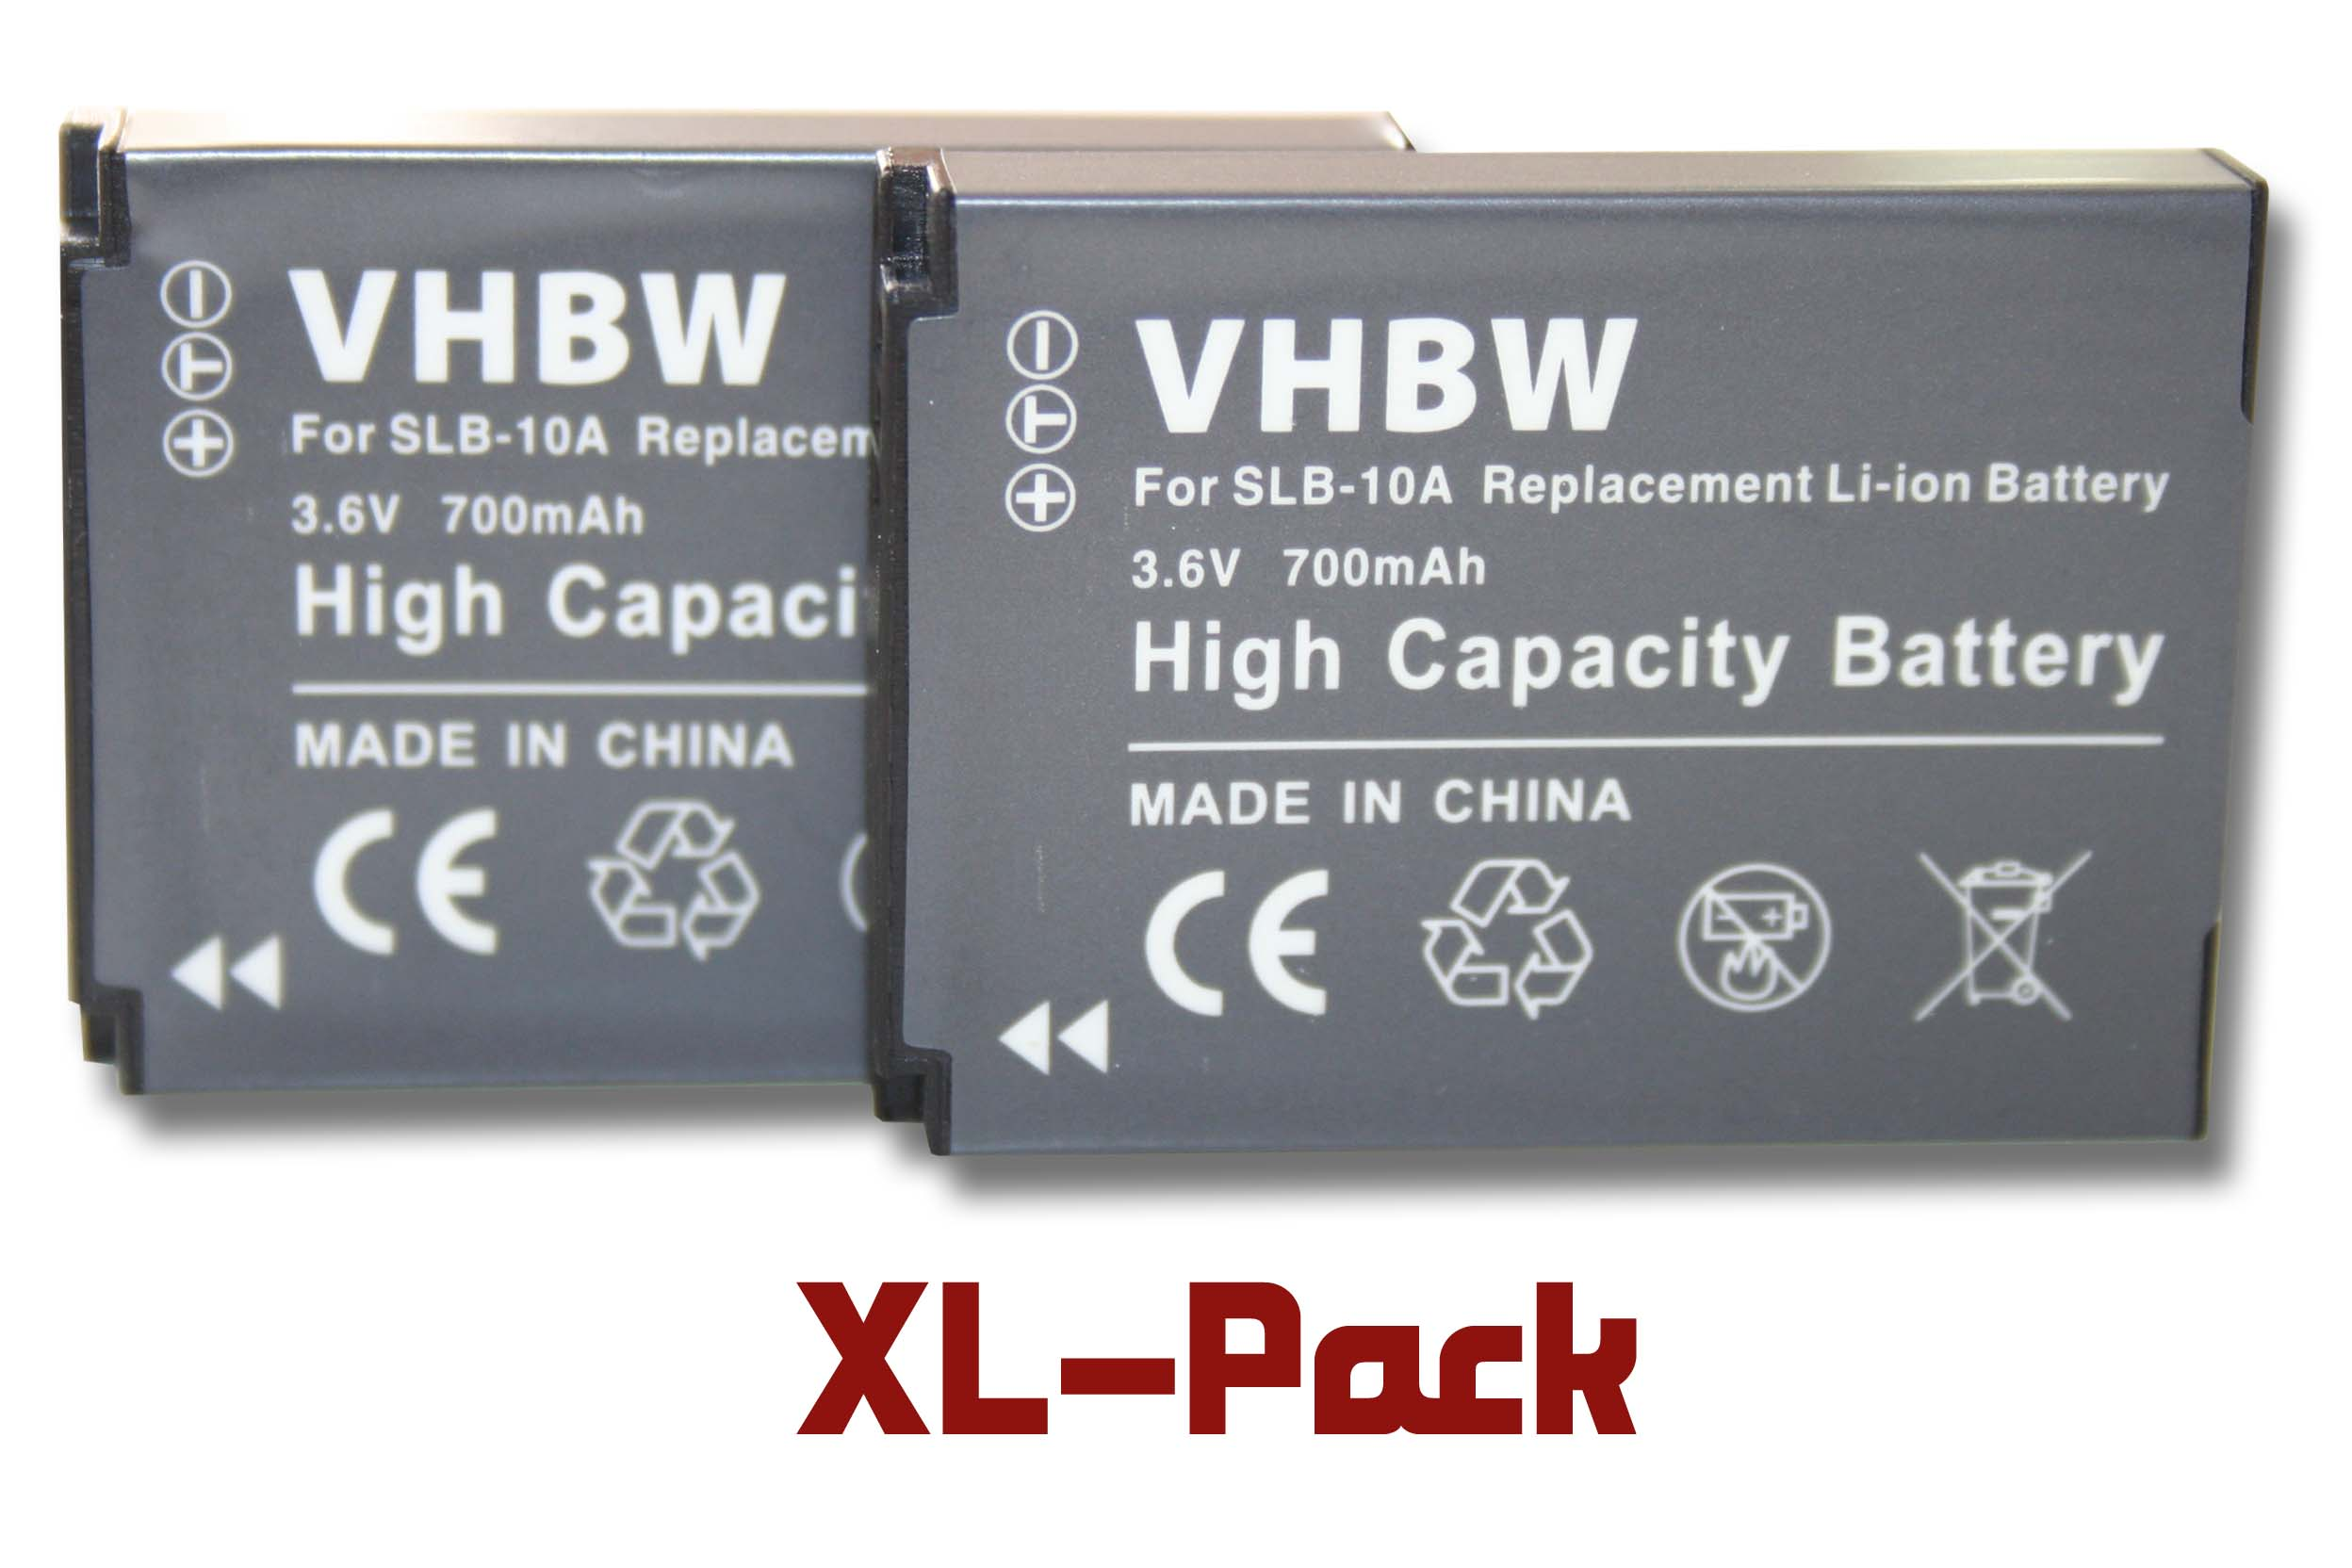 VHBW kompatibel Akku mit Soocoo 3.6 700 Volt, S70 Li-Ion Kamera, 